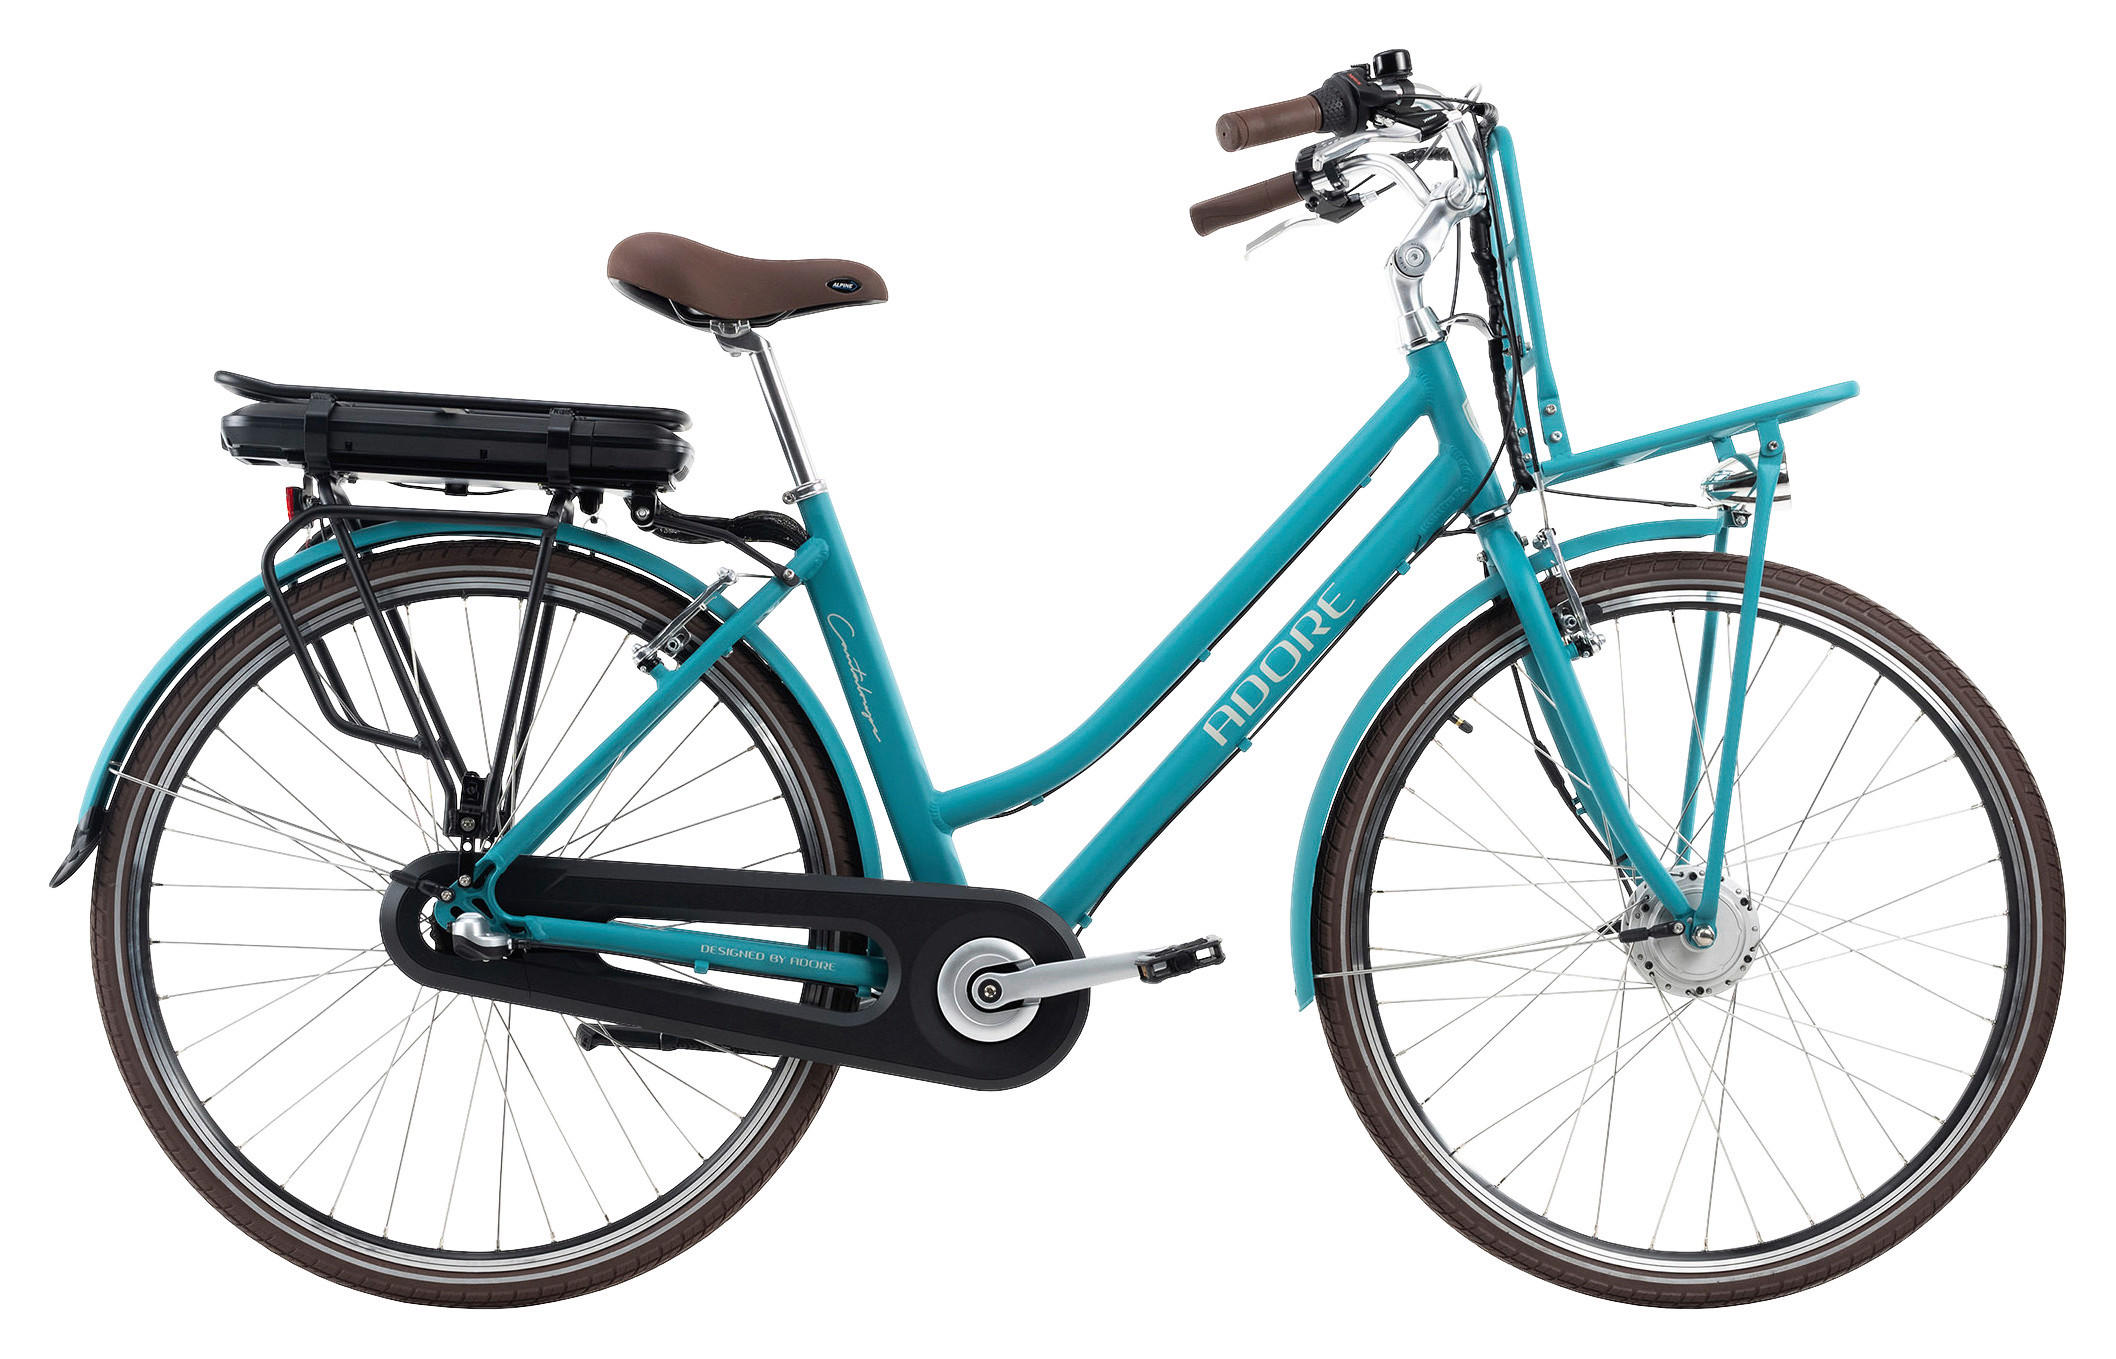 ADORE City-Bike Adore Cantaloupe ca. 250 W ca. 36 V ca. 28 Zoll